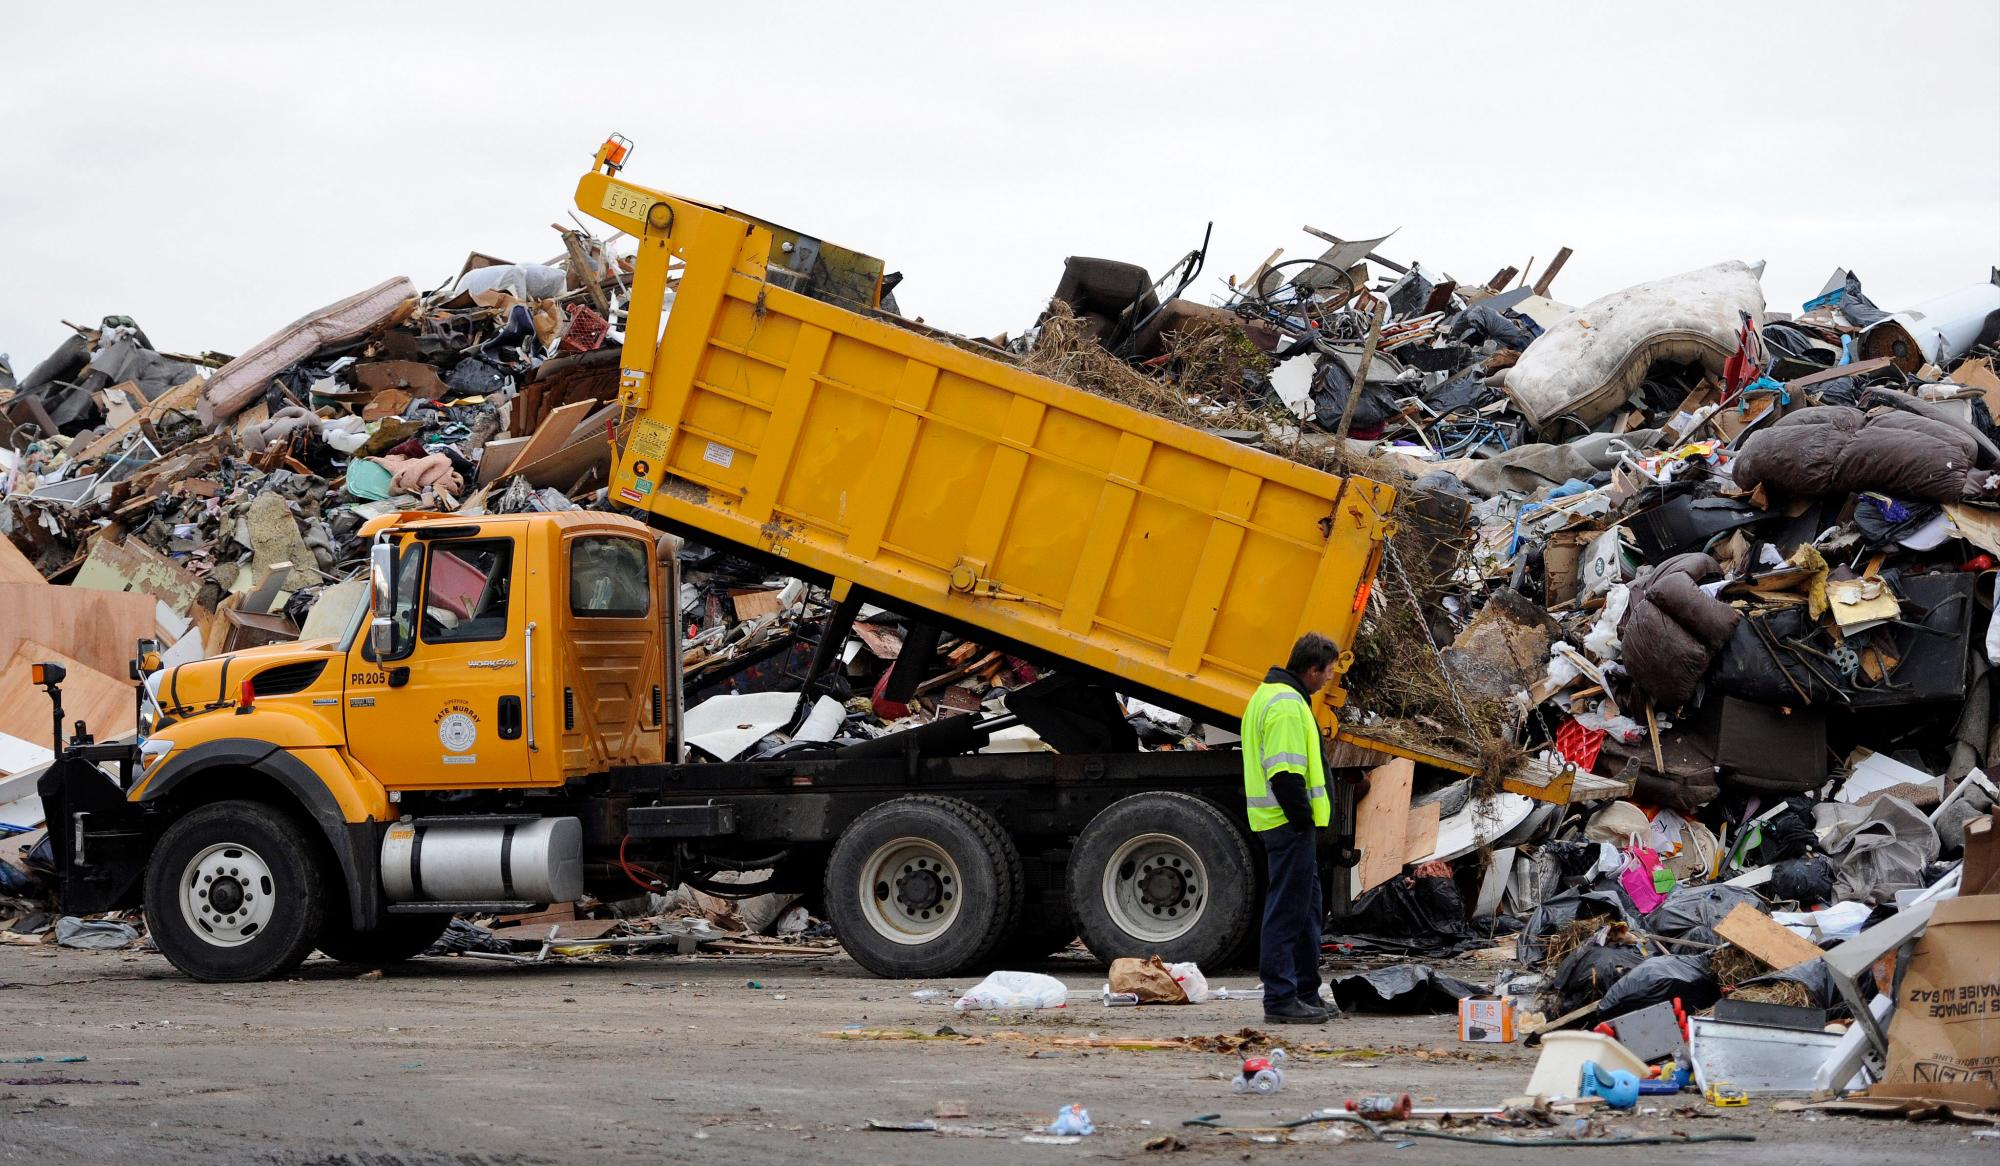 EEUU SANDY:AGX28. LIDO (NY, EE.UU.), 13/11/2012.- Un trabajador dirige el descargue de un camión con escombros y basura ocasionados por el huracán Sandy hoy, martes 13 de noviembre de 2012, en la playa Lido, de Nueva York (EE.UU.). 